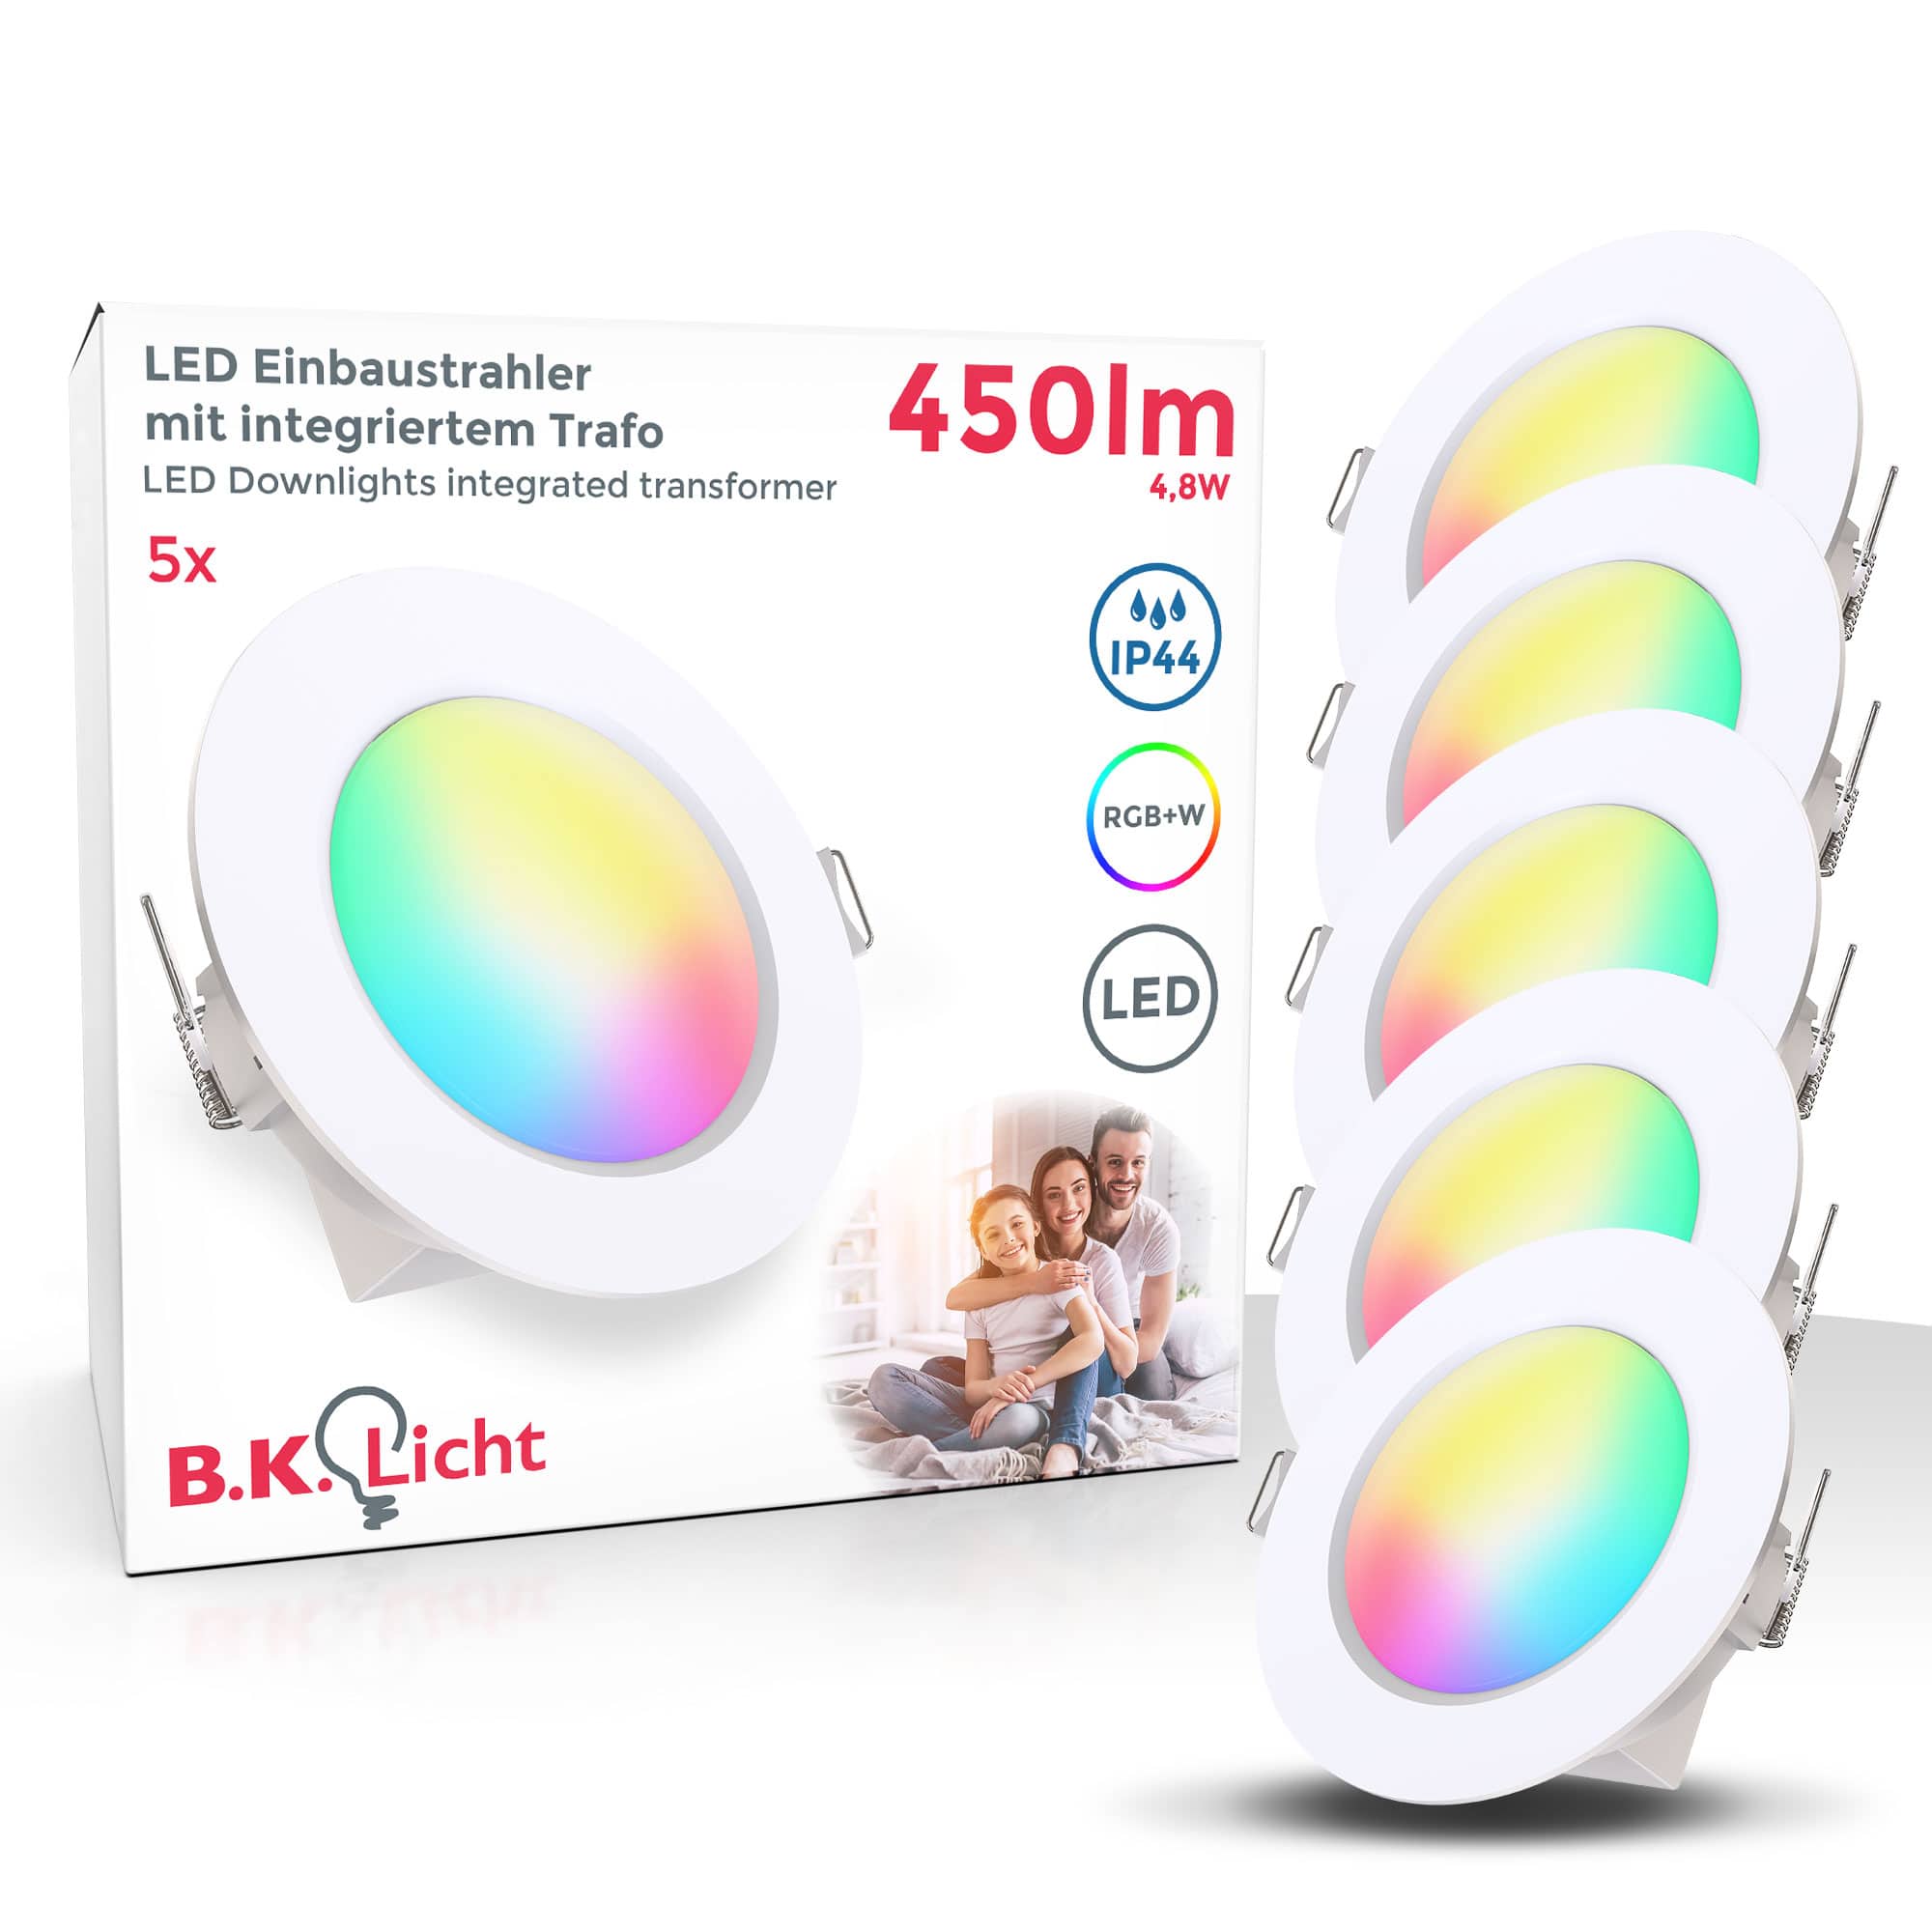 B.K.Licht Onlineshop & LED Leuchten | kaufen günstig Lampen